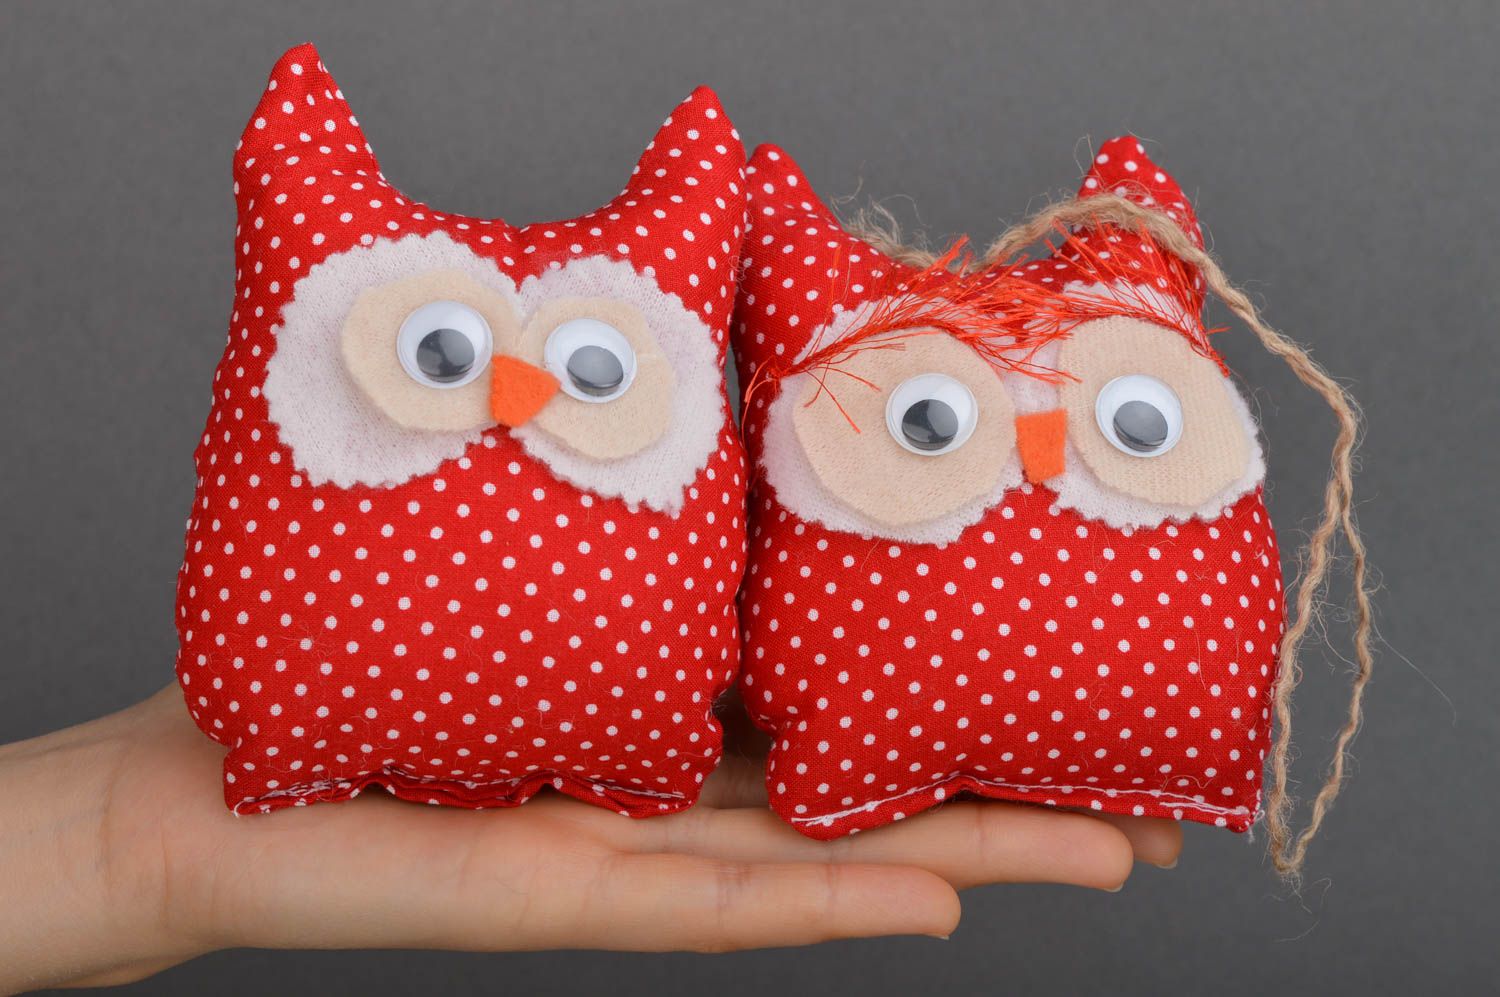 Игрушки совы игрушки ручной работы из хлопка красные интересные подарки фото 4